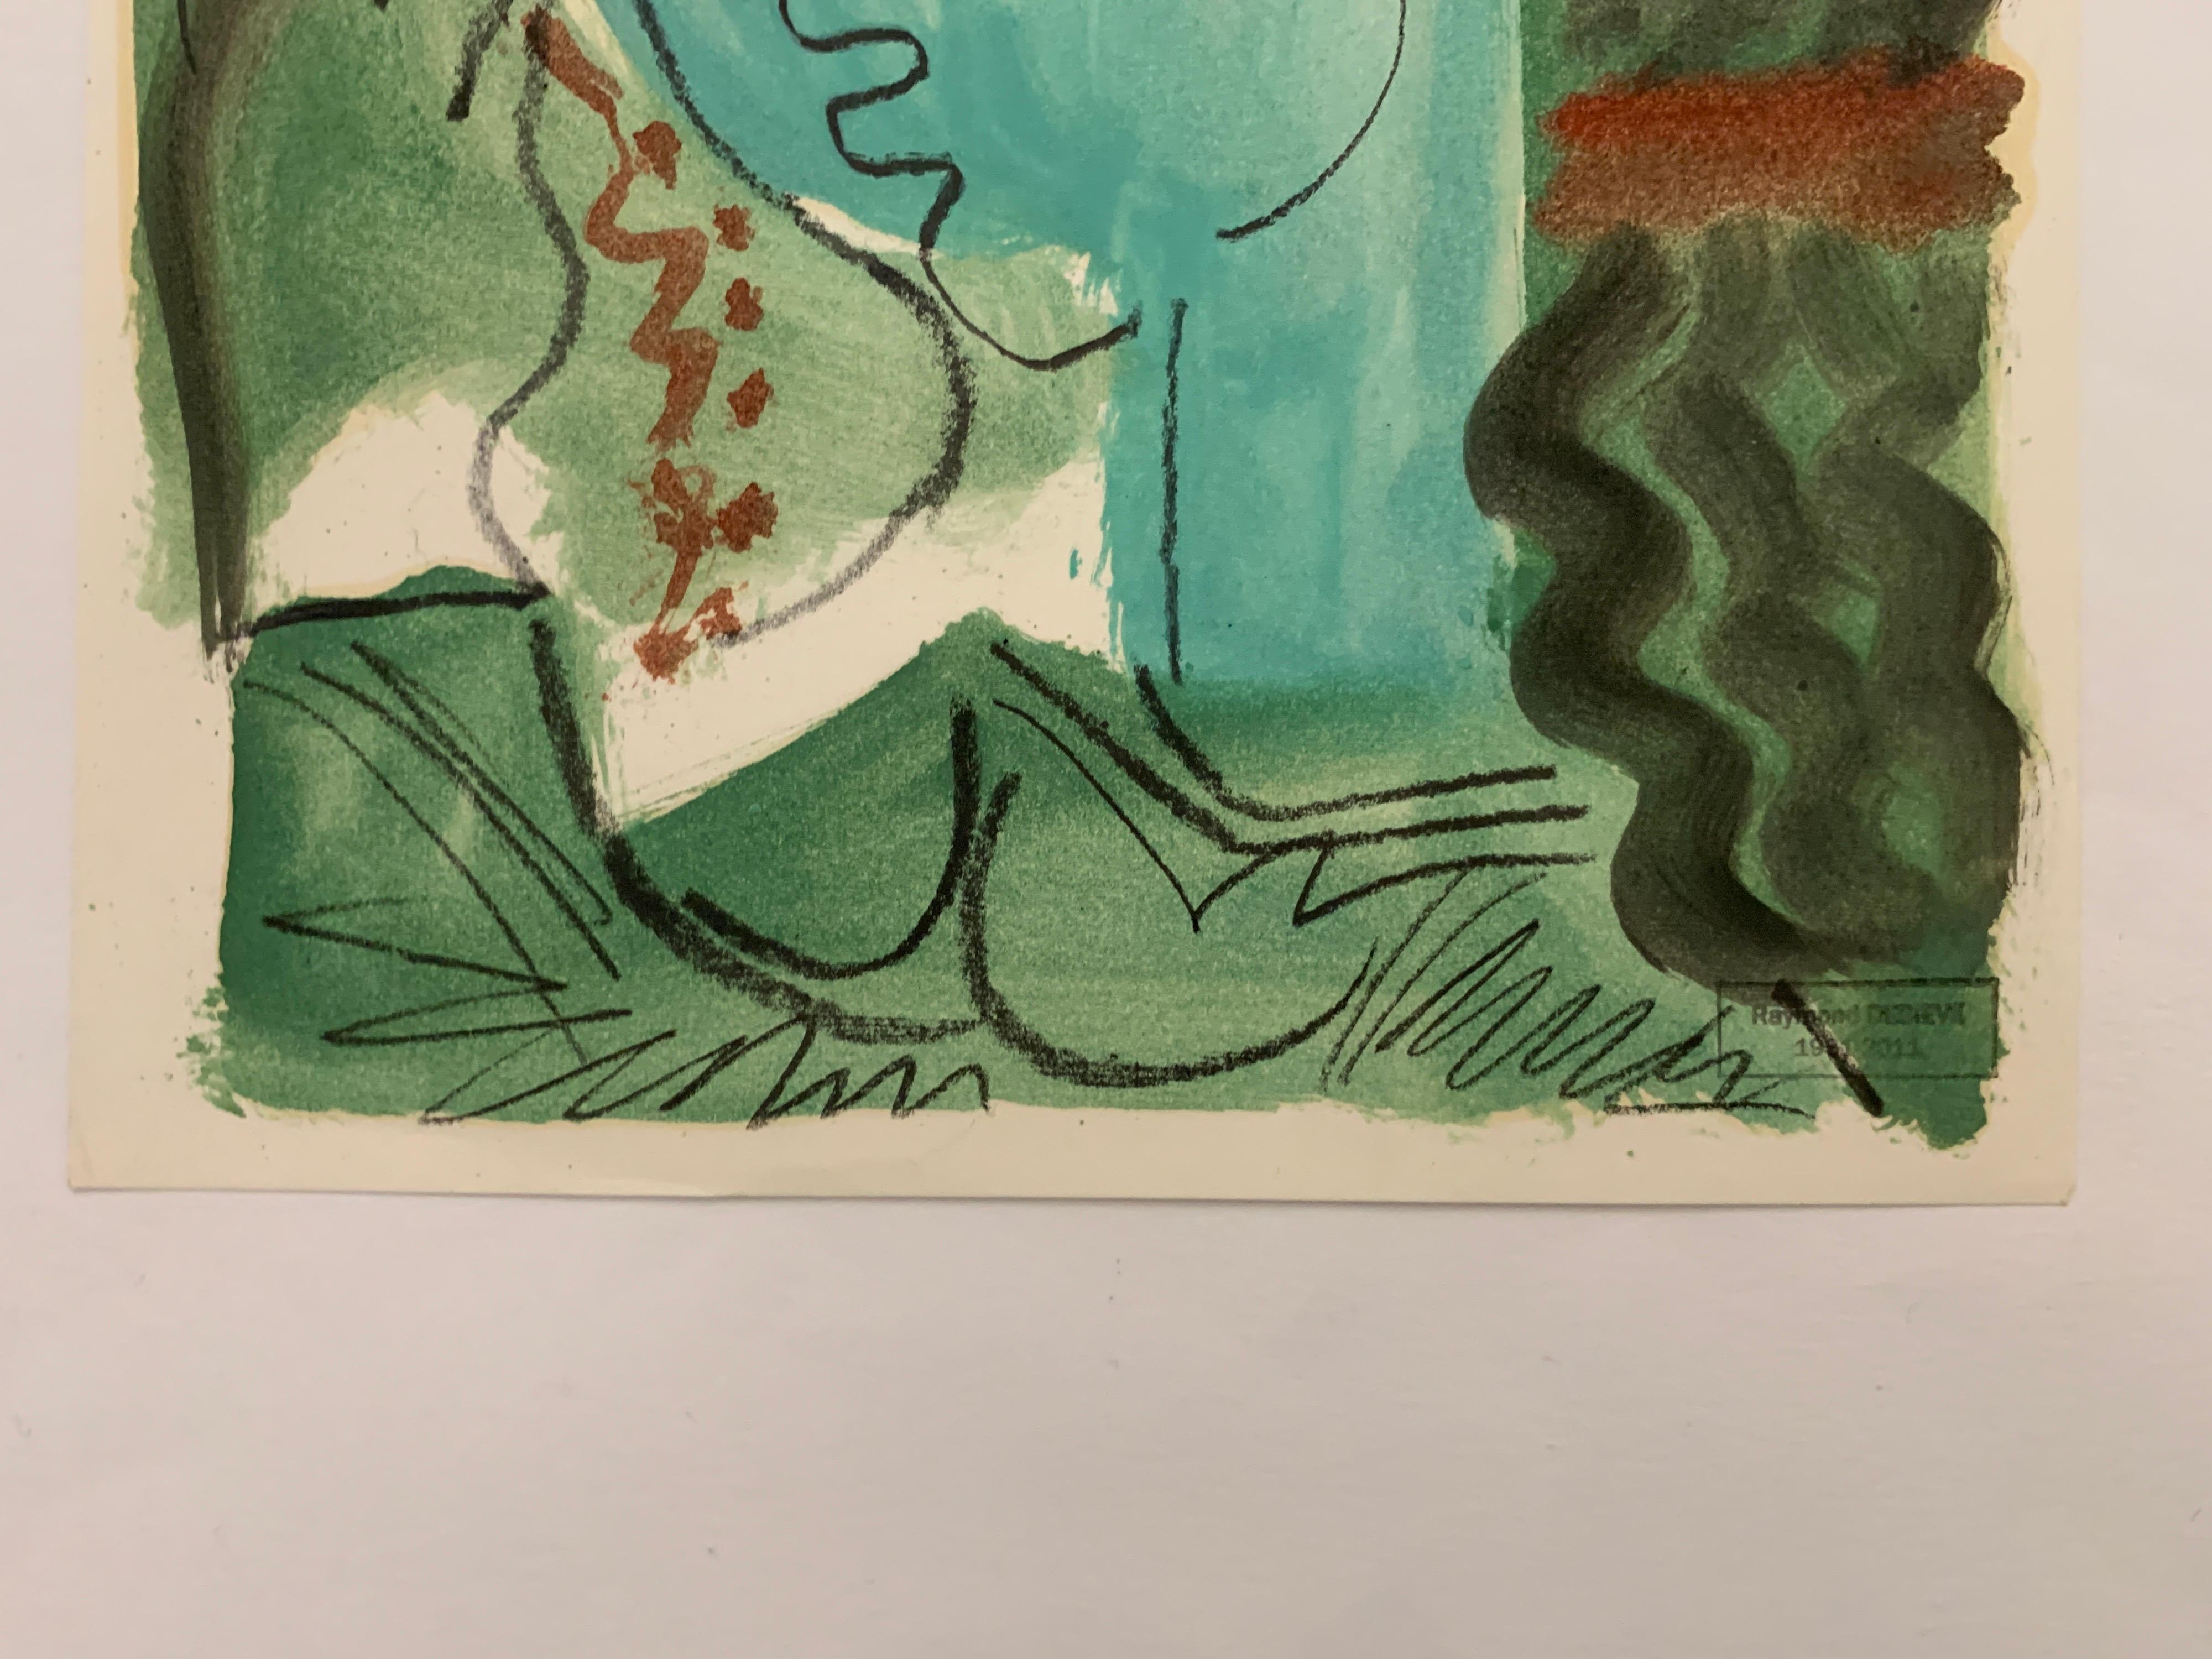 En Vert by Raymond Debieve, French Cubist Portrait on Paper 1